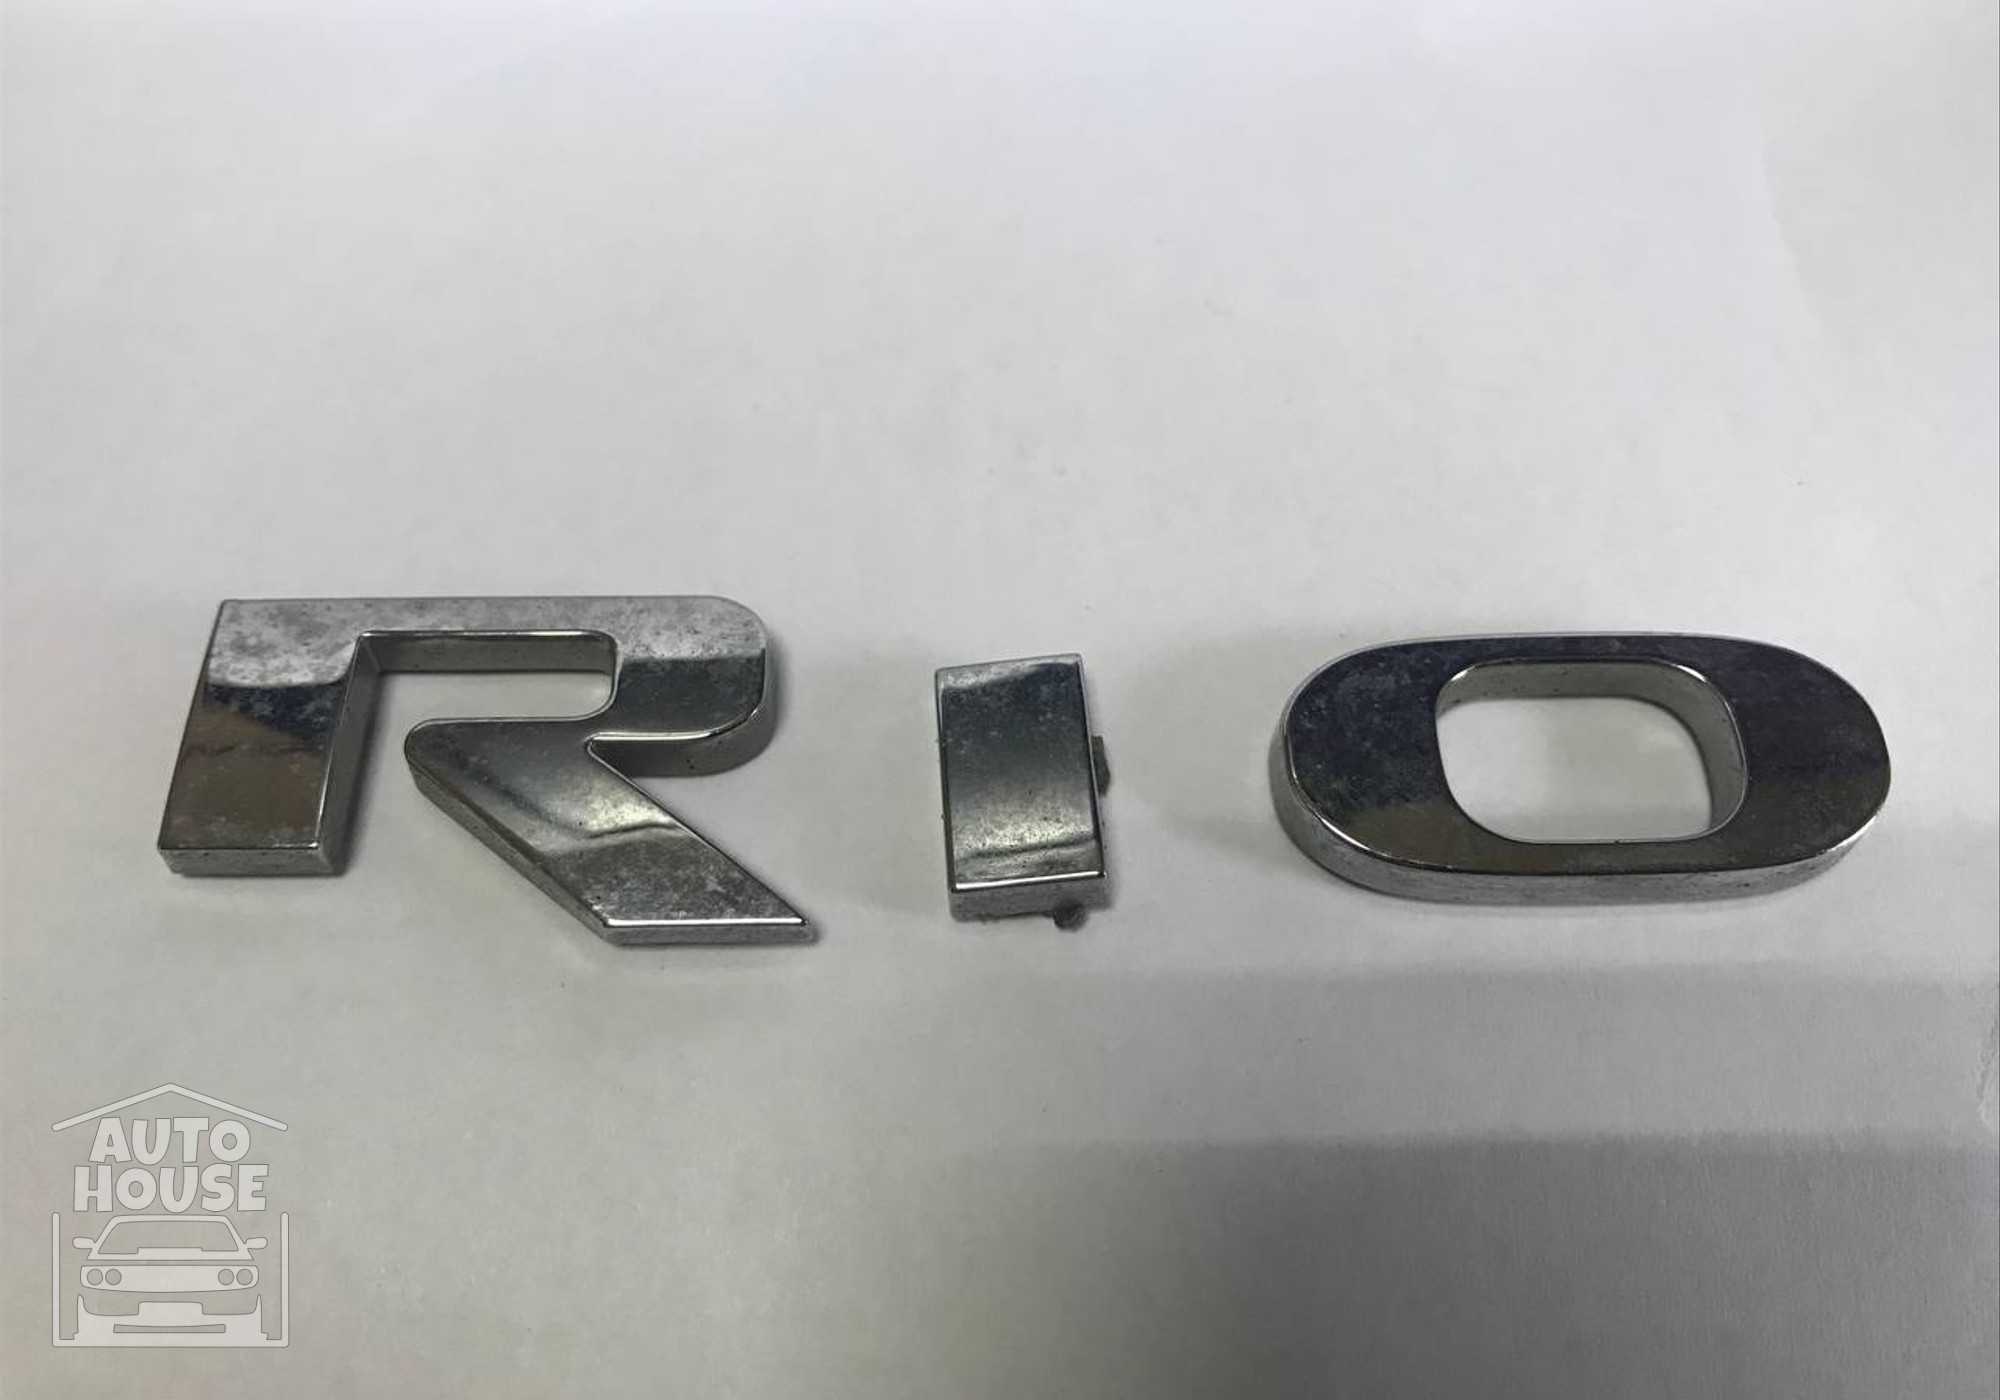 Эмблема на крышку багажника для Kia Rio III (с 2011 по 2017)